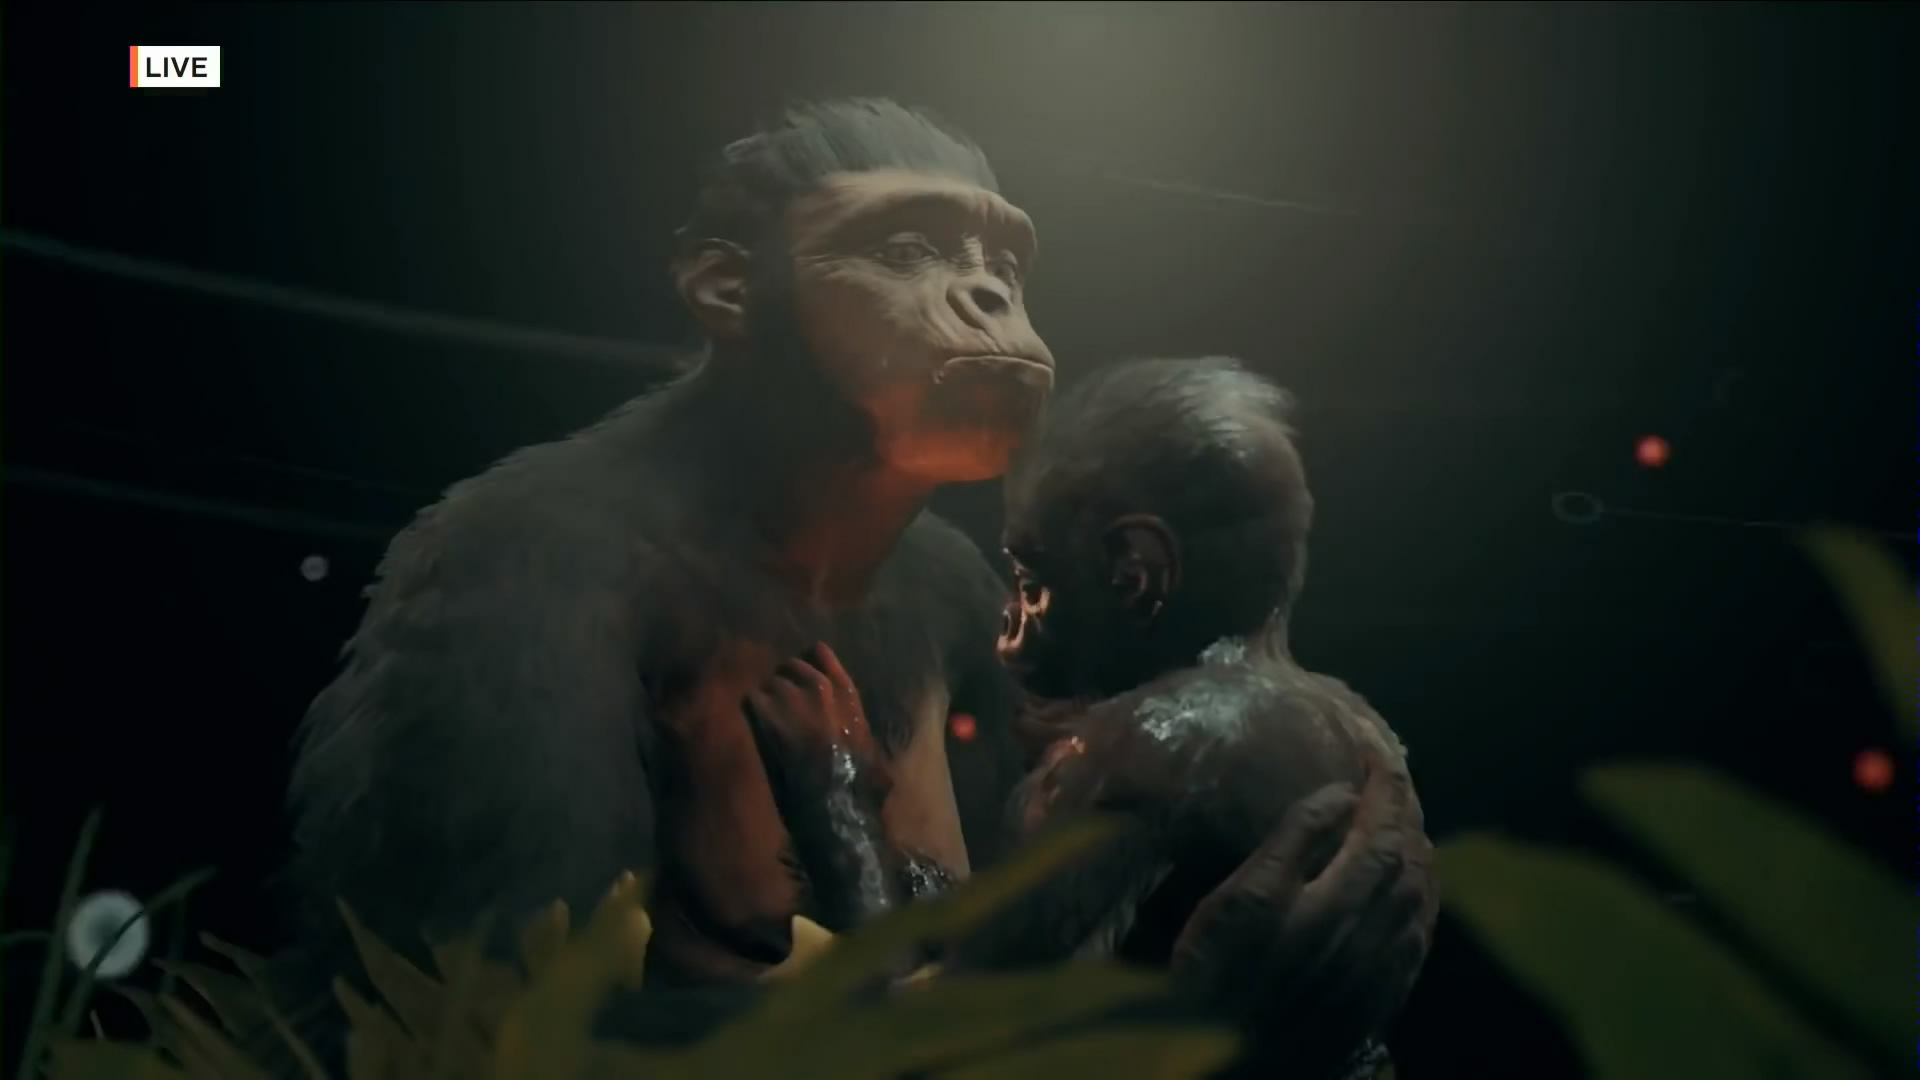 《先祖：人类奥德赛》新演示视频 史前猿人求生体验